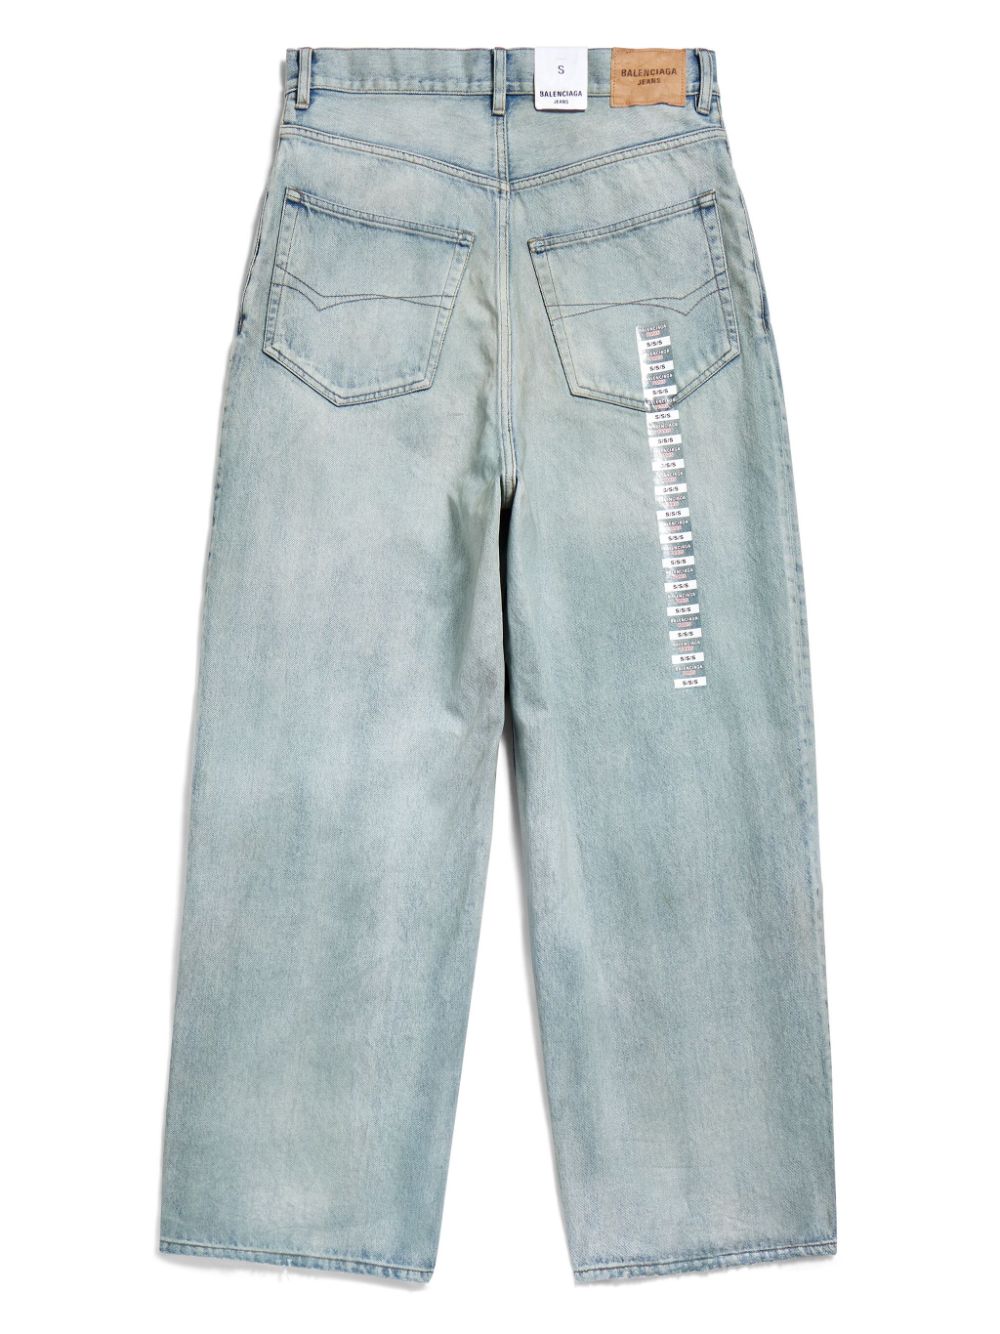 Light blue cotton denim jeans